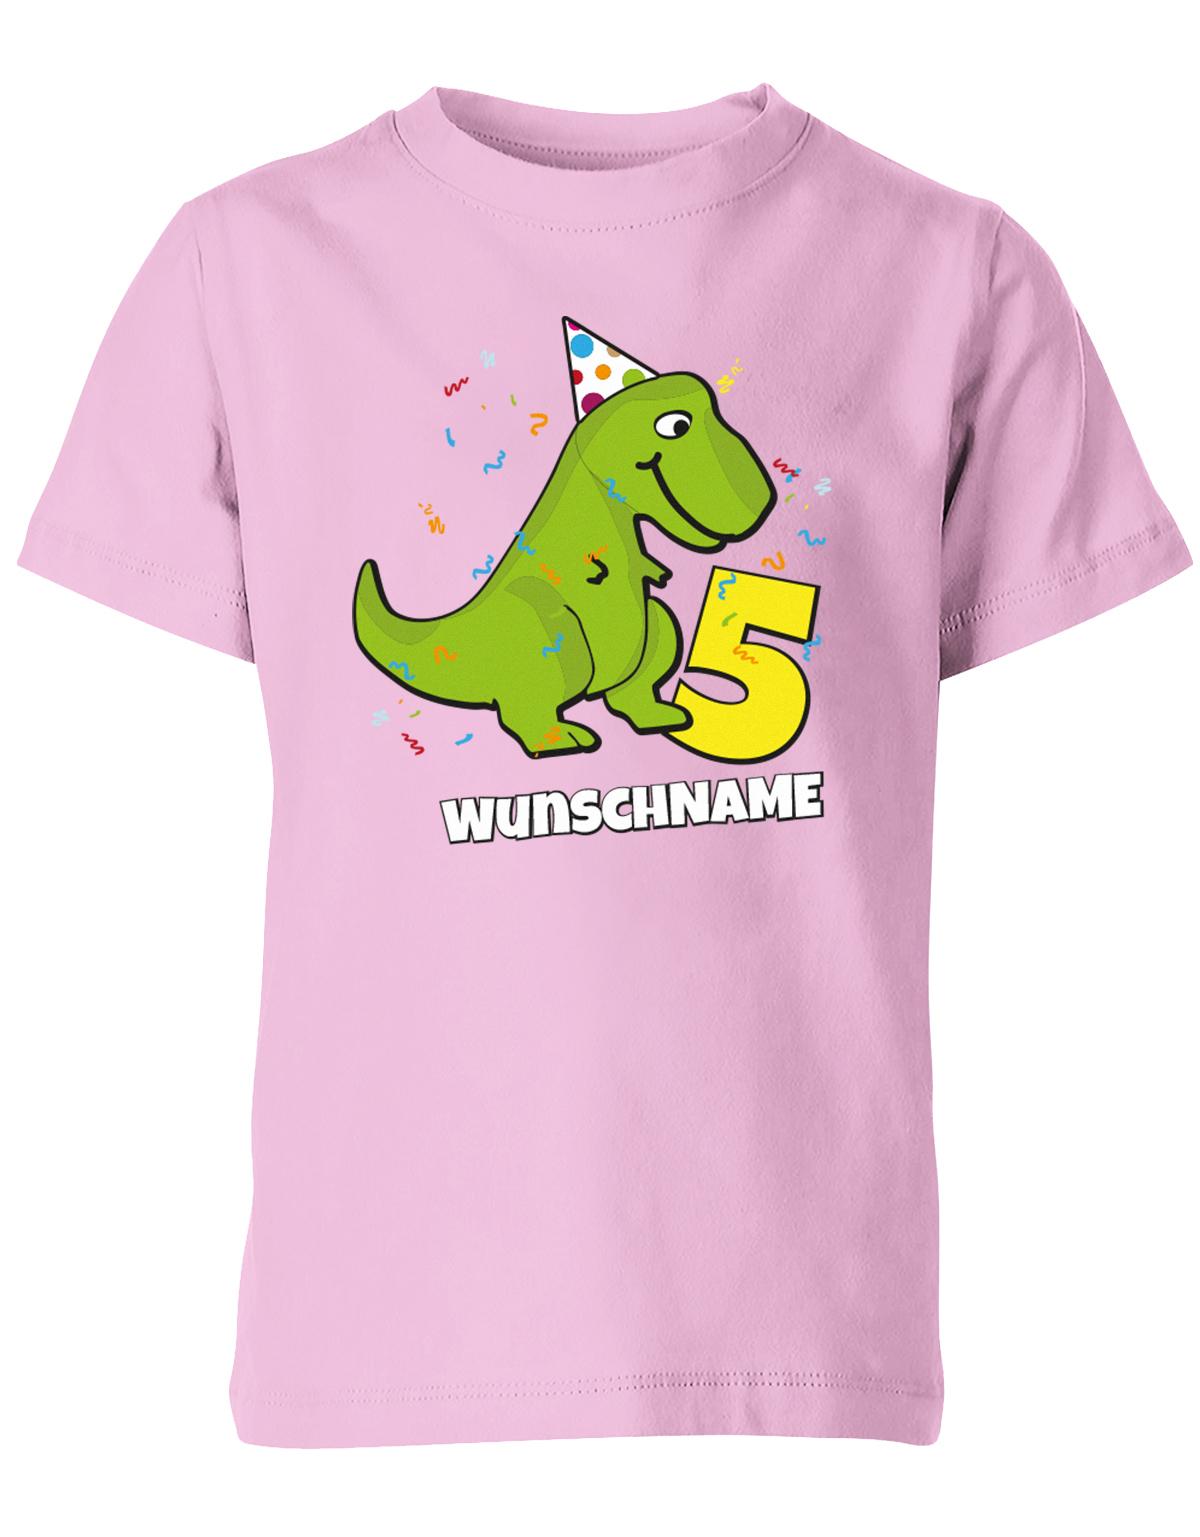 ich-bin-5-Dinosaurier-t-rex-wunschname-geburtstag-kinder-shirt-rosa